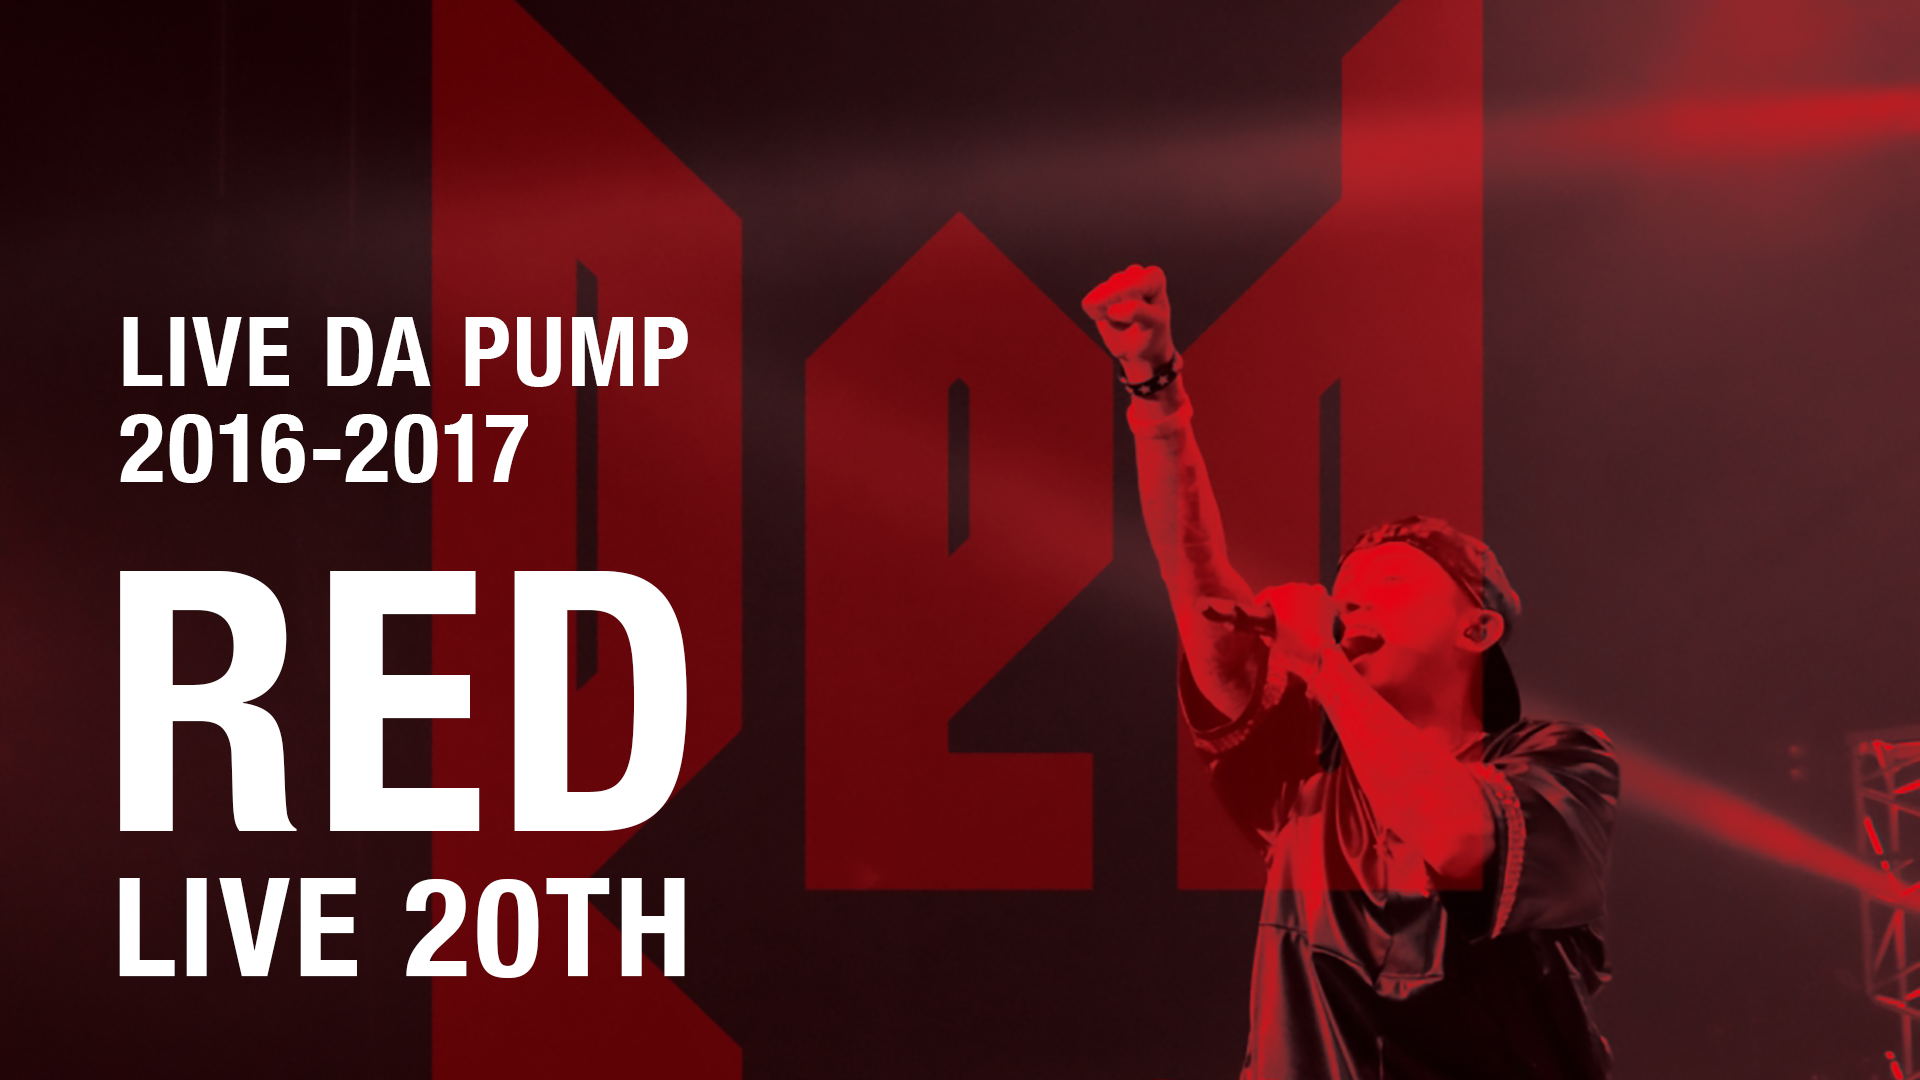 LIVE DA PUMP 2016-2017 RED ～ live 20th ～(音楽・アイドル / 2017) - 動画配信 | U-NEXT  31日間無料トライアル